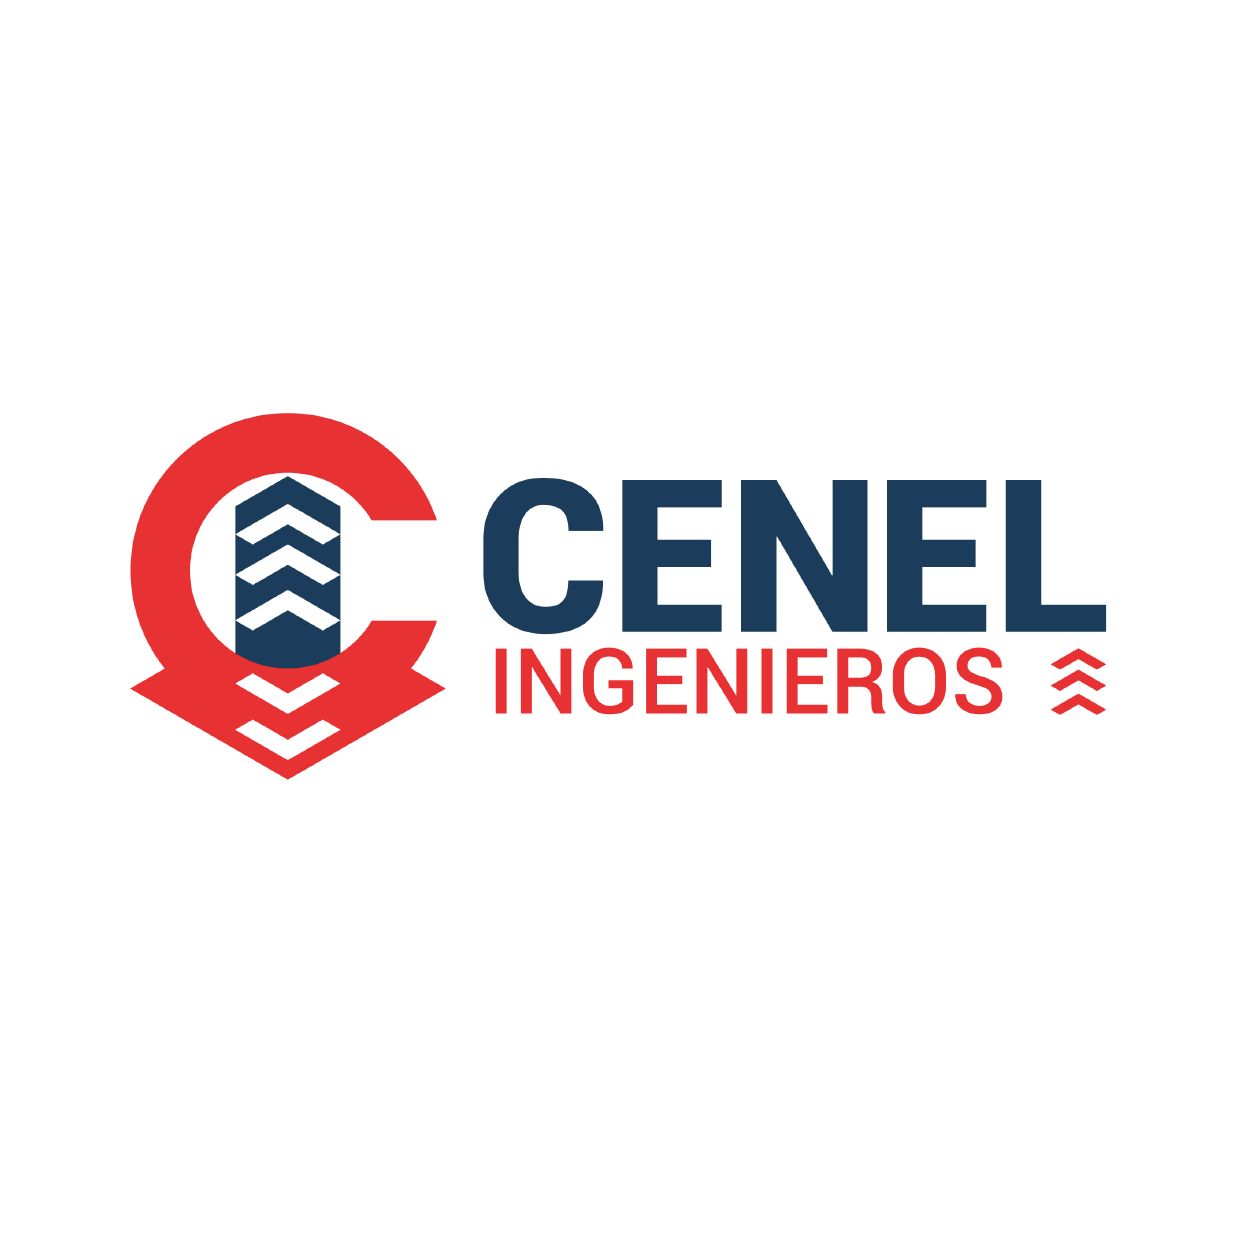 Diseño de Logotipo: Cenel Ingenieros - Logos Peru - Diseño de Logos - Agencia de diseño de Logos - Nombres para Restaurantes Peruanos - logos de constructoras - logo de empresas constructoras - diseño de logotipos en lima